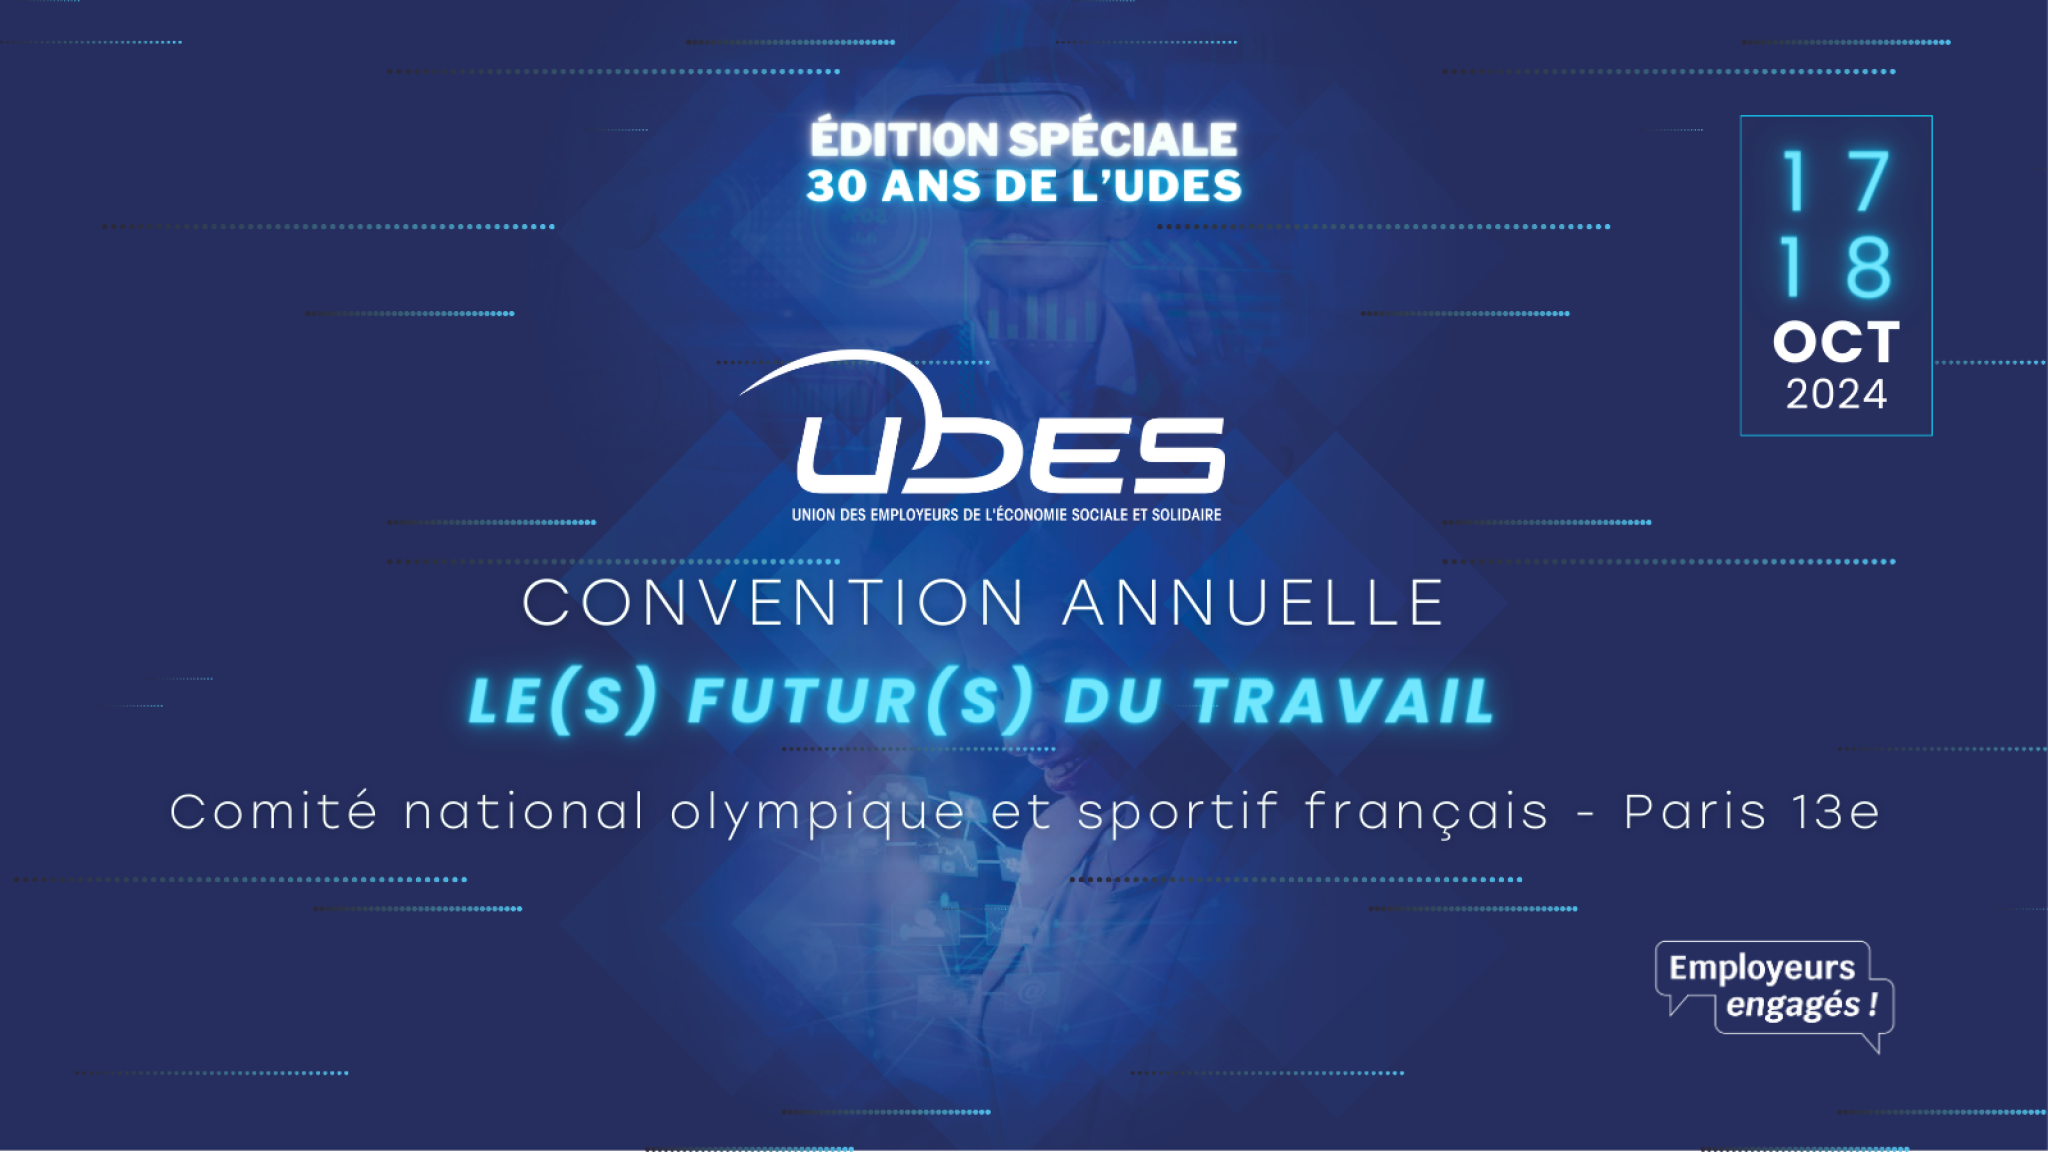 Convention annuelle de l'UDES : spéciale édition 30 ans 